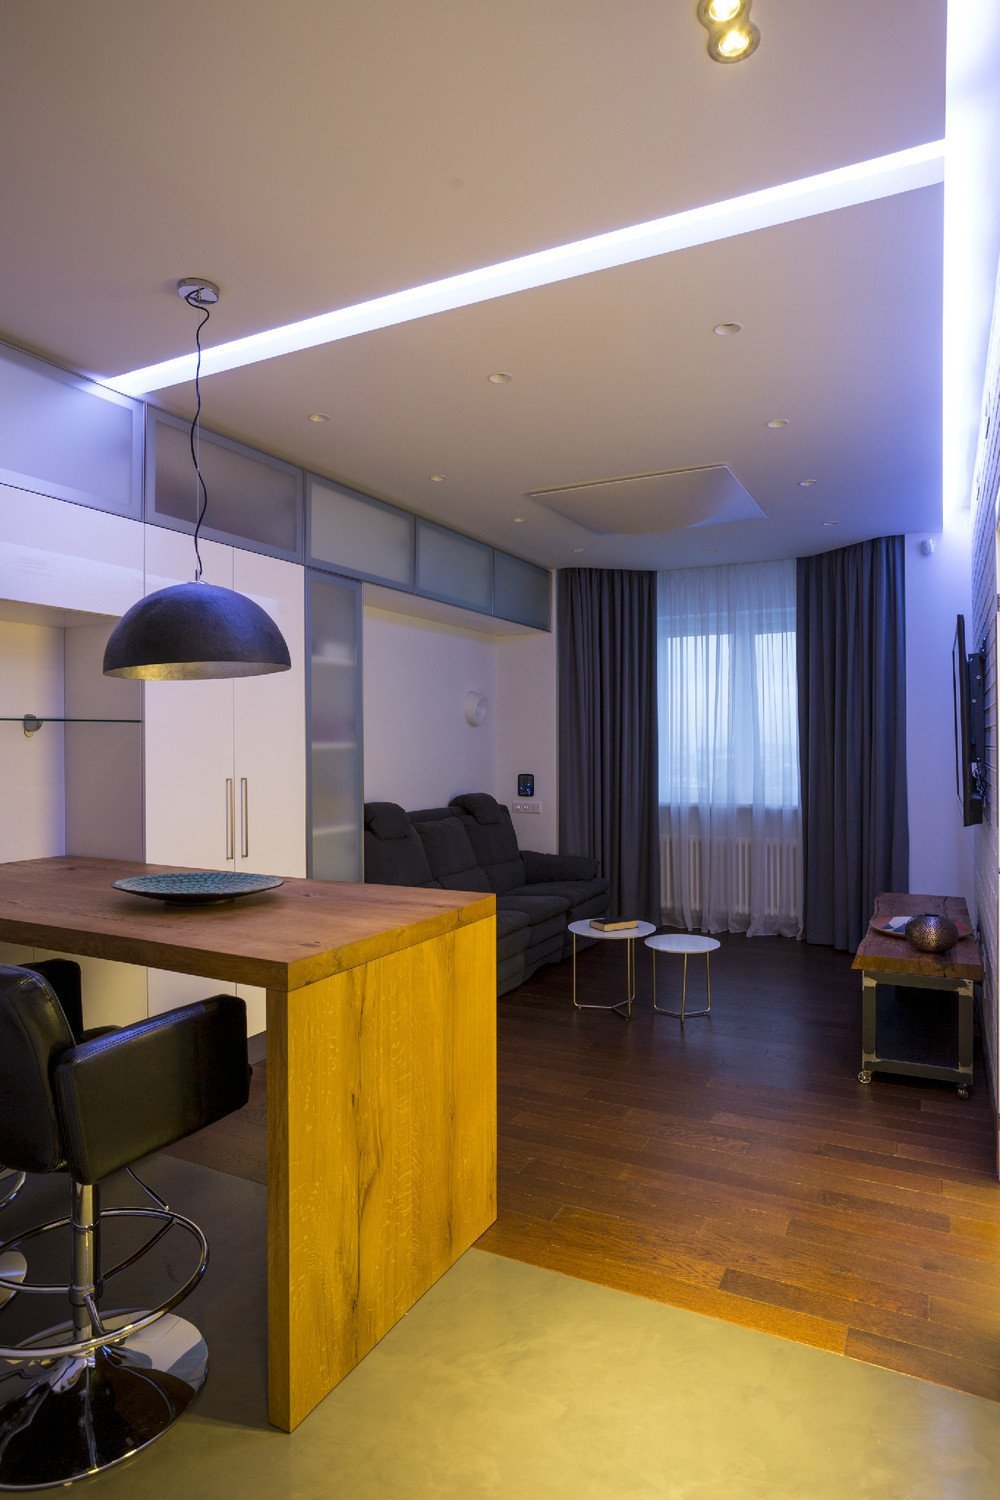 Квартира 43 кв м дизайн. дизайн двухкомнатной квартиры 43 кв. м. с управляемой подсветкой